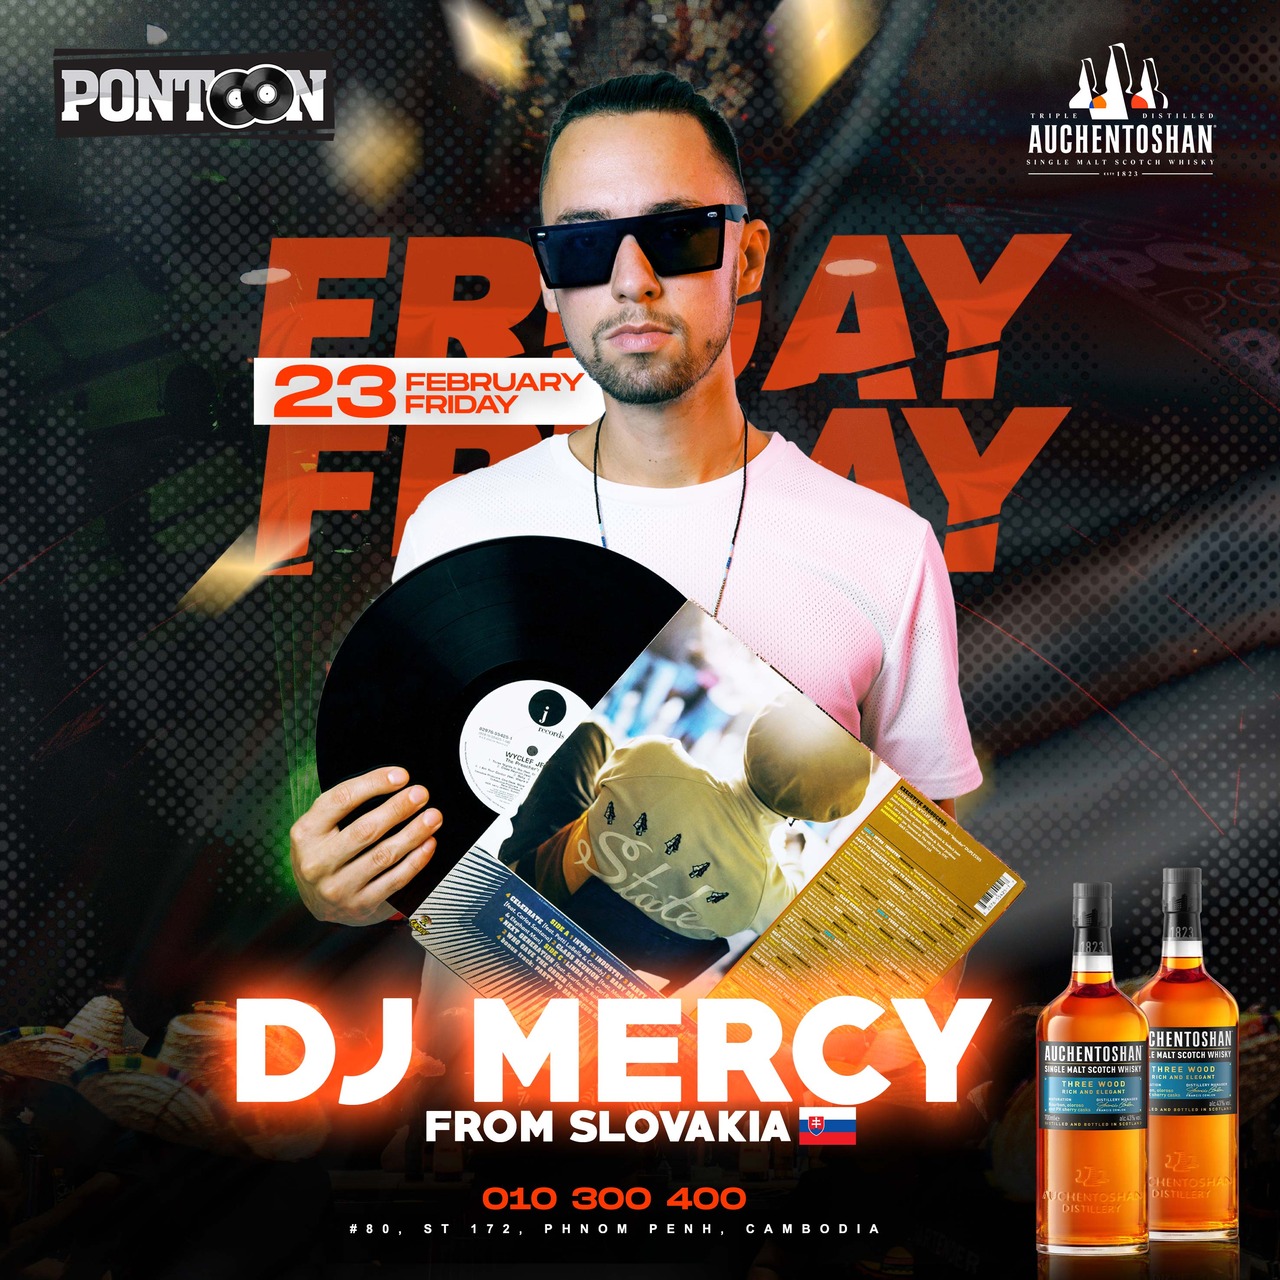 Meet DJ MERCY at Pontoon club